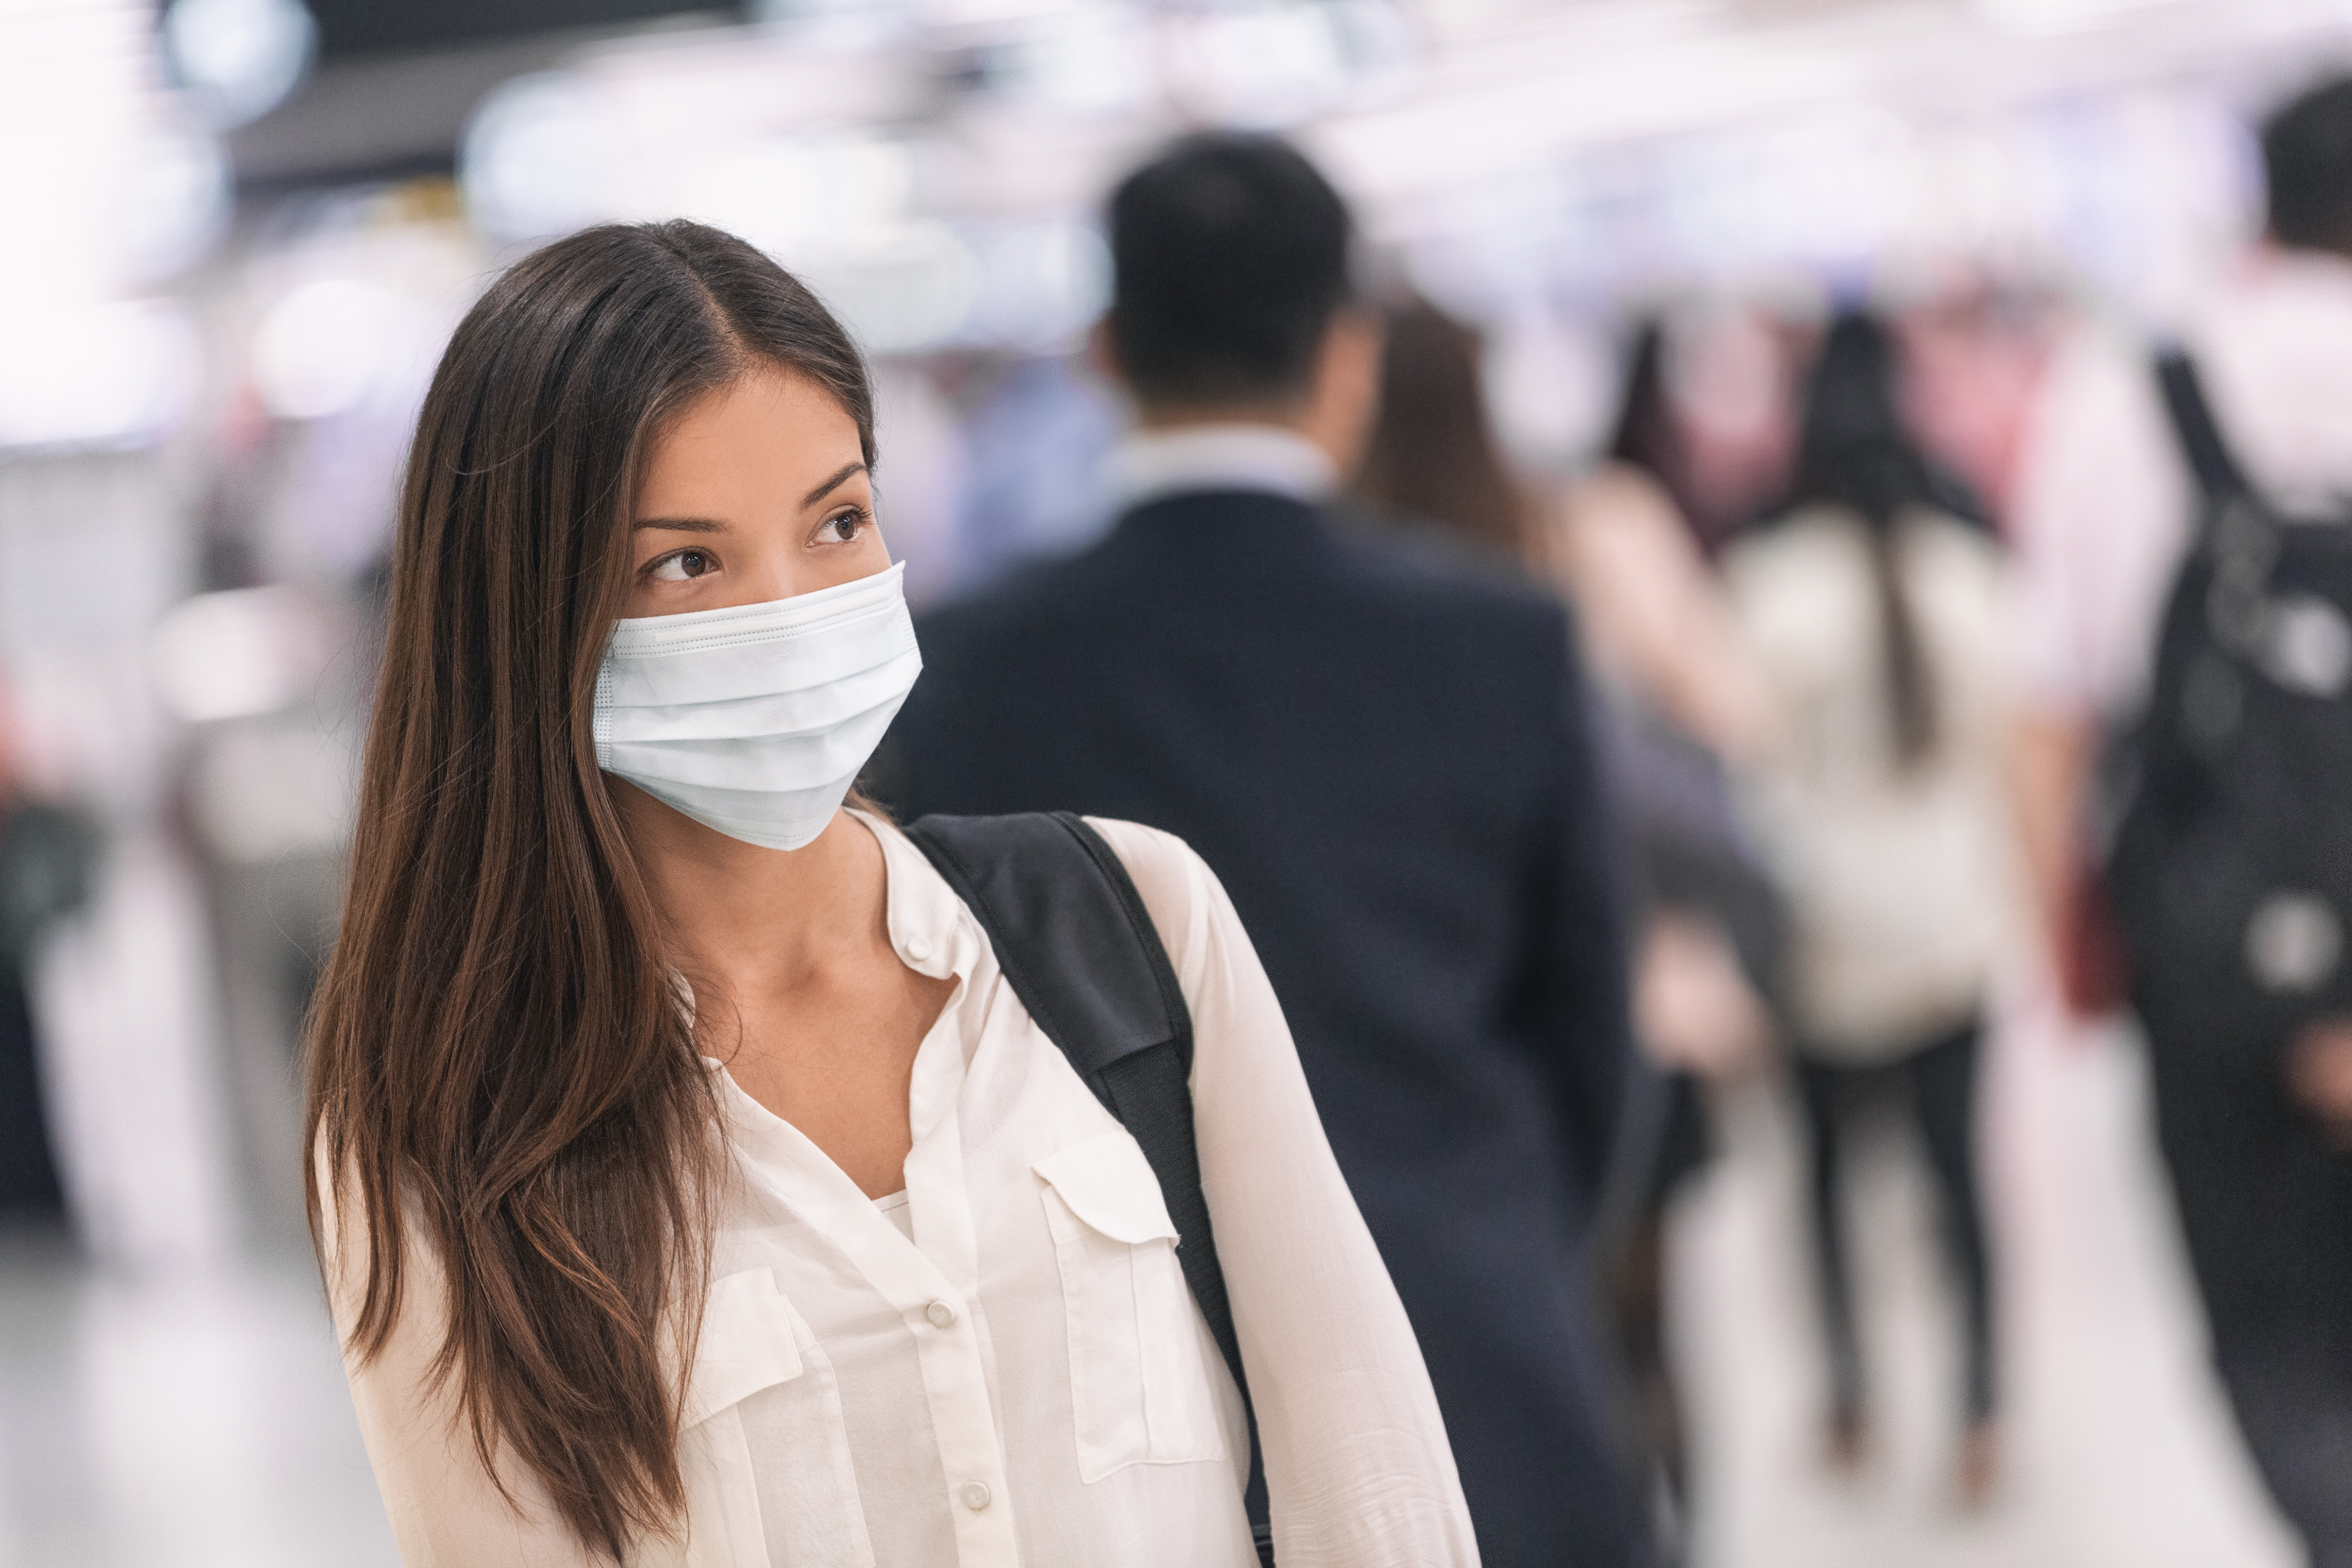 Les dernières données sont en faveur de l'utilisation universelle des masques et confirme un effet de réduction significative de propagation du SRAS-CoV-2 mais aussi des autres infections virales (Visuel Adobe Stock 319060259)